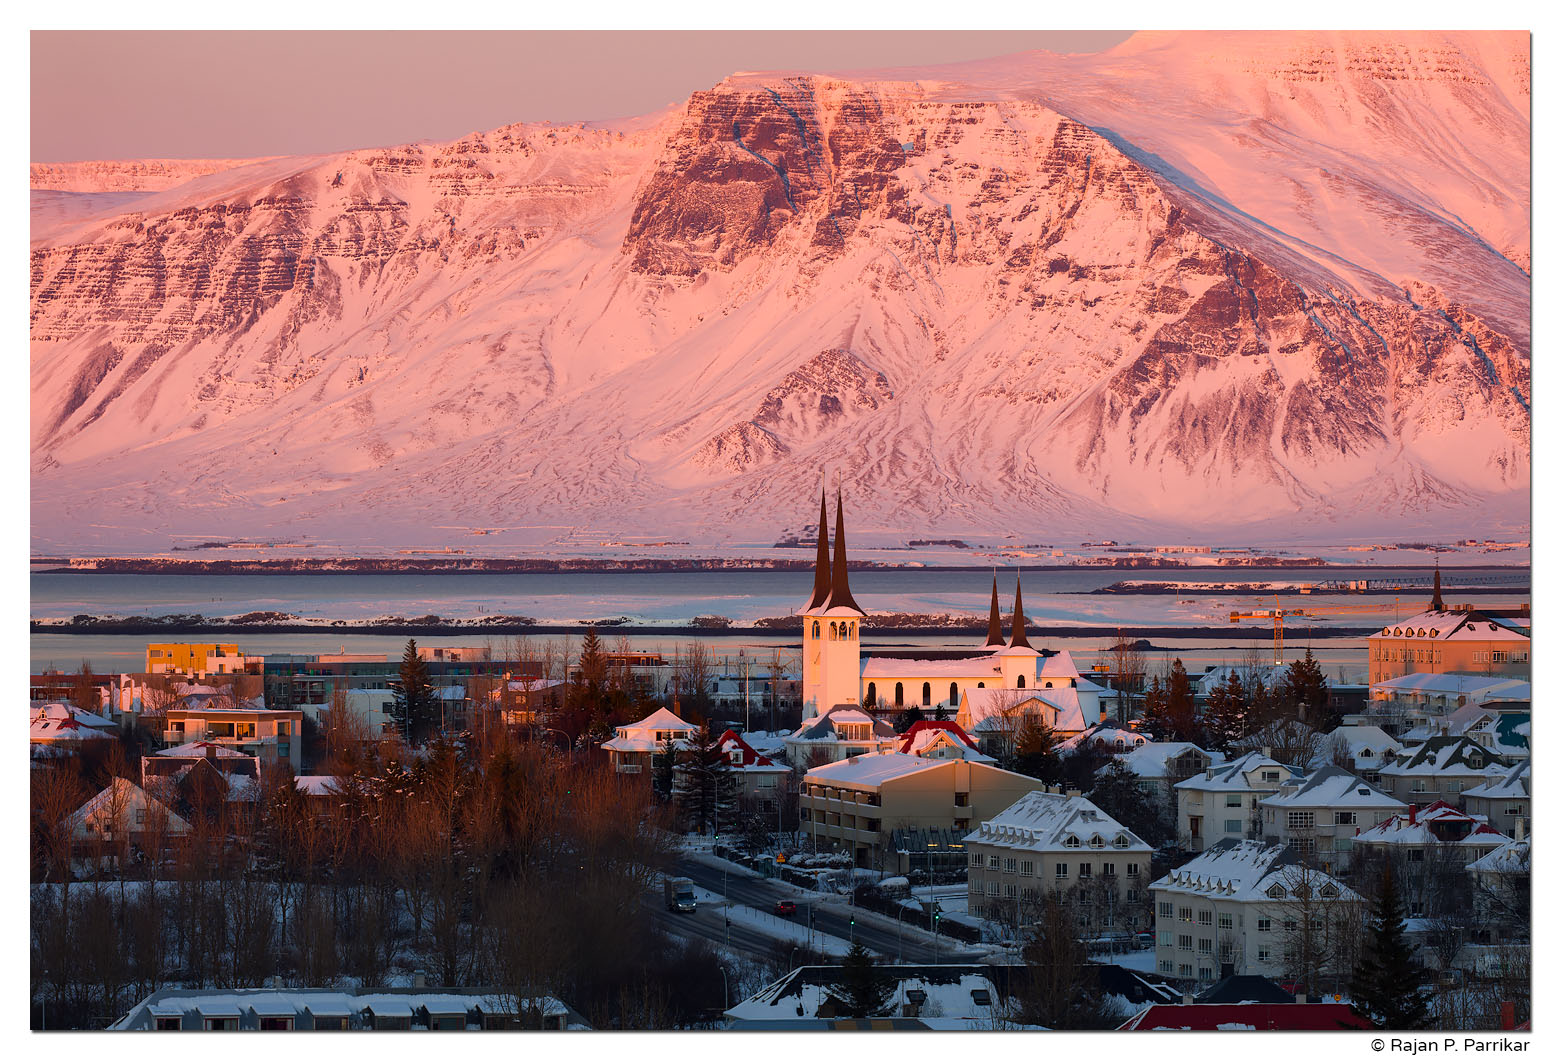 Winter, Reykjavík, Esja, Háteigskirkja, Sunset, Iceland